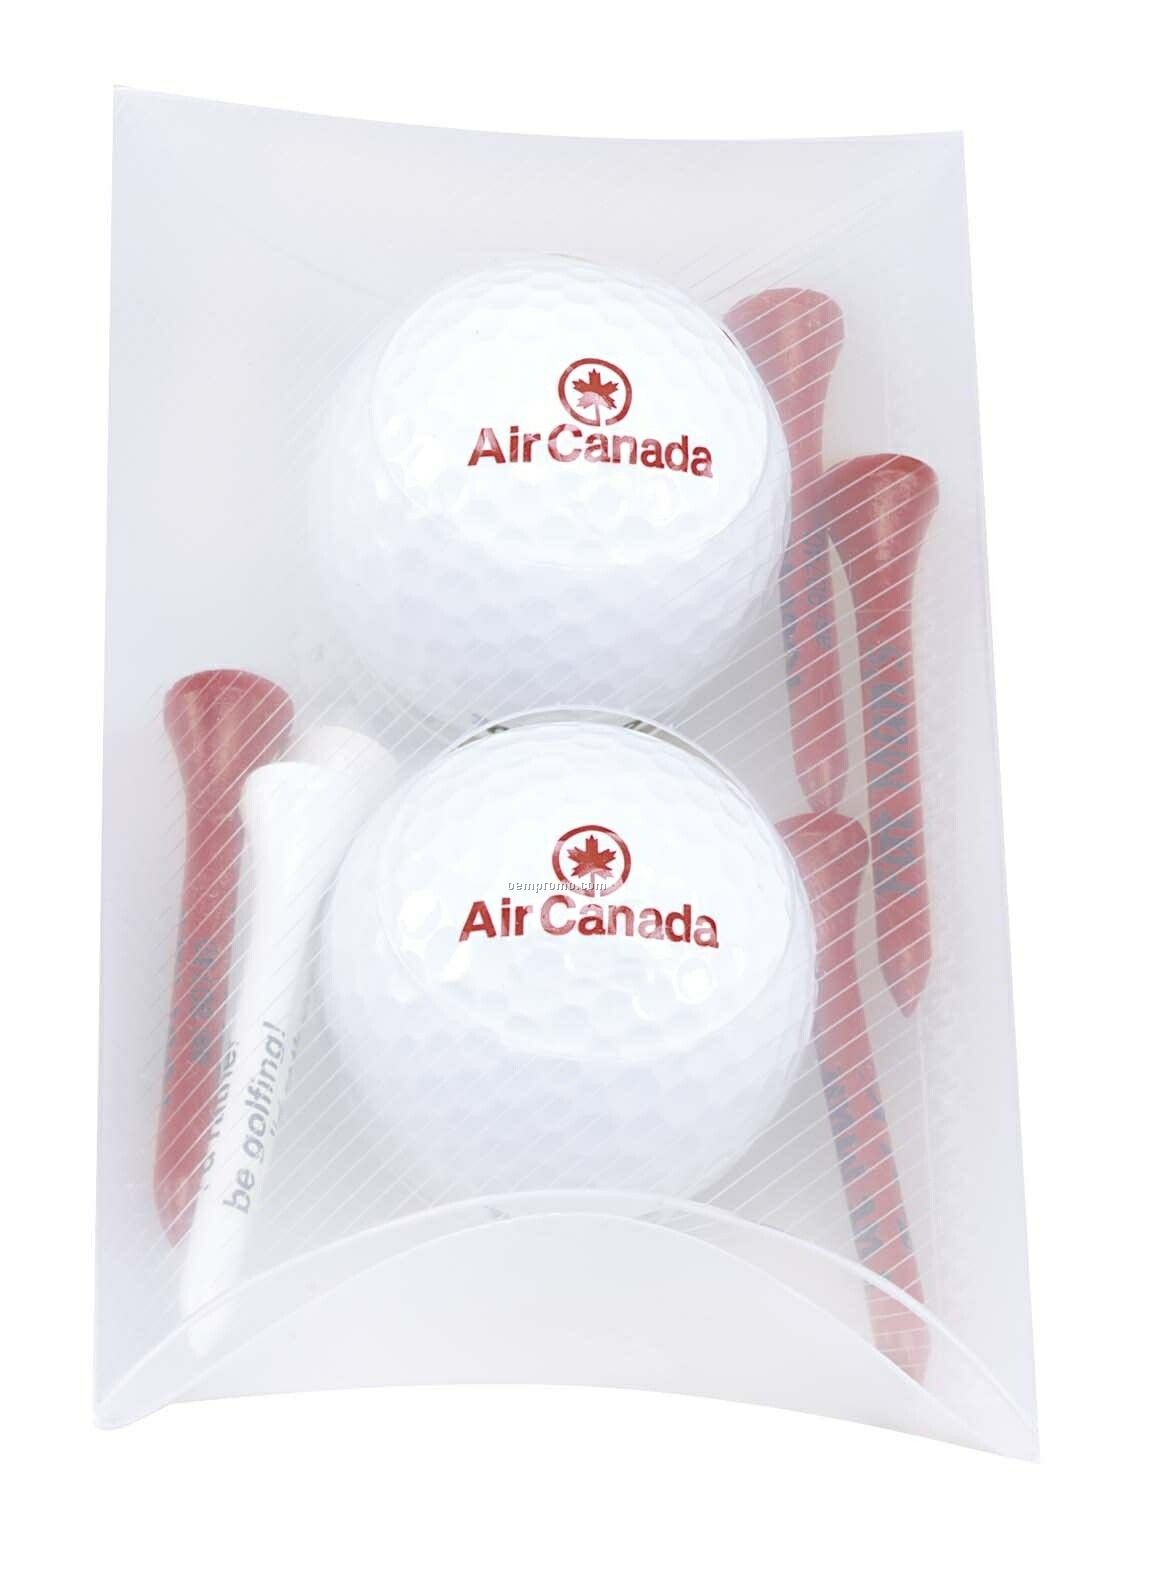 Tee Off 2 Ball Pillow Pack W/ Nike Ndx Heat Golf Balls & 6 Tees